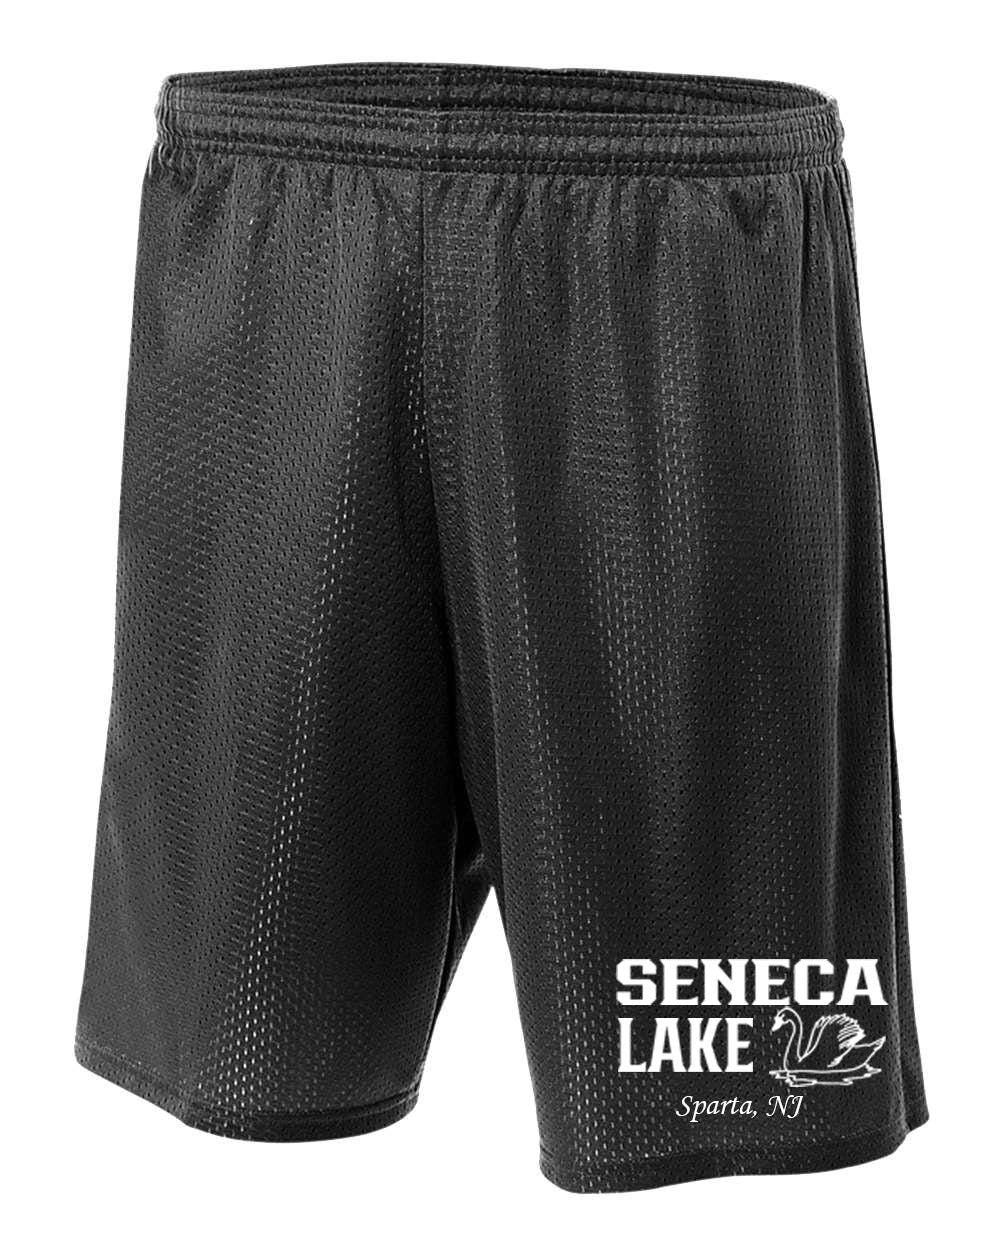 Seneca Lake Design 1 Shorts